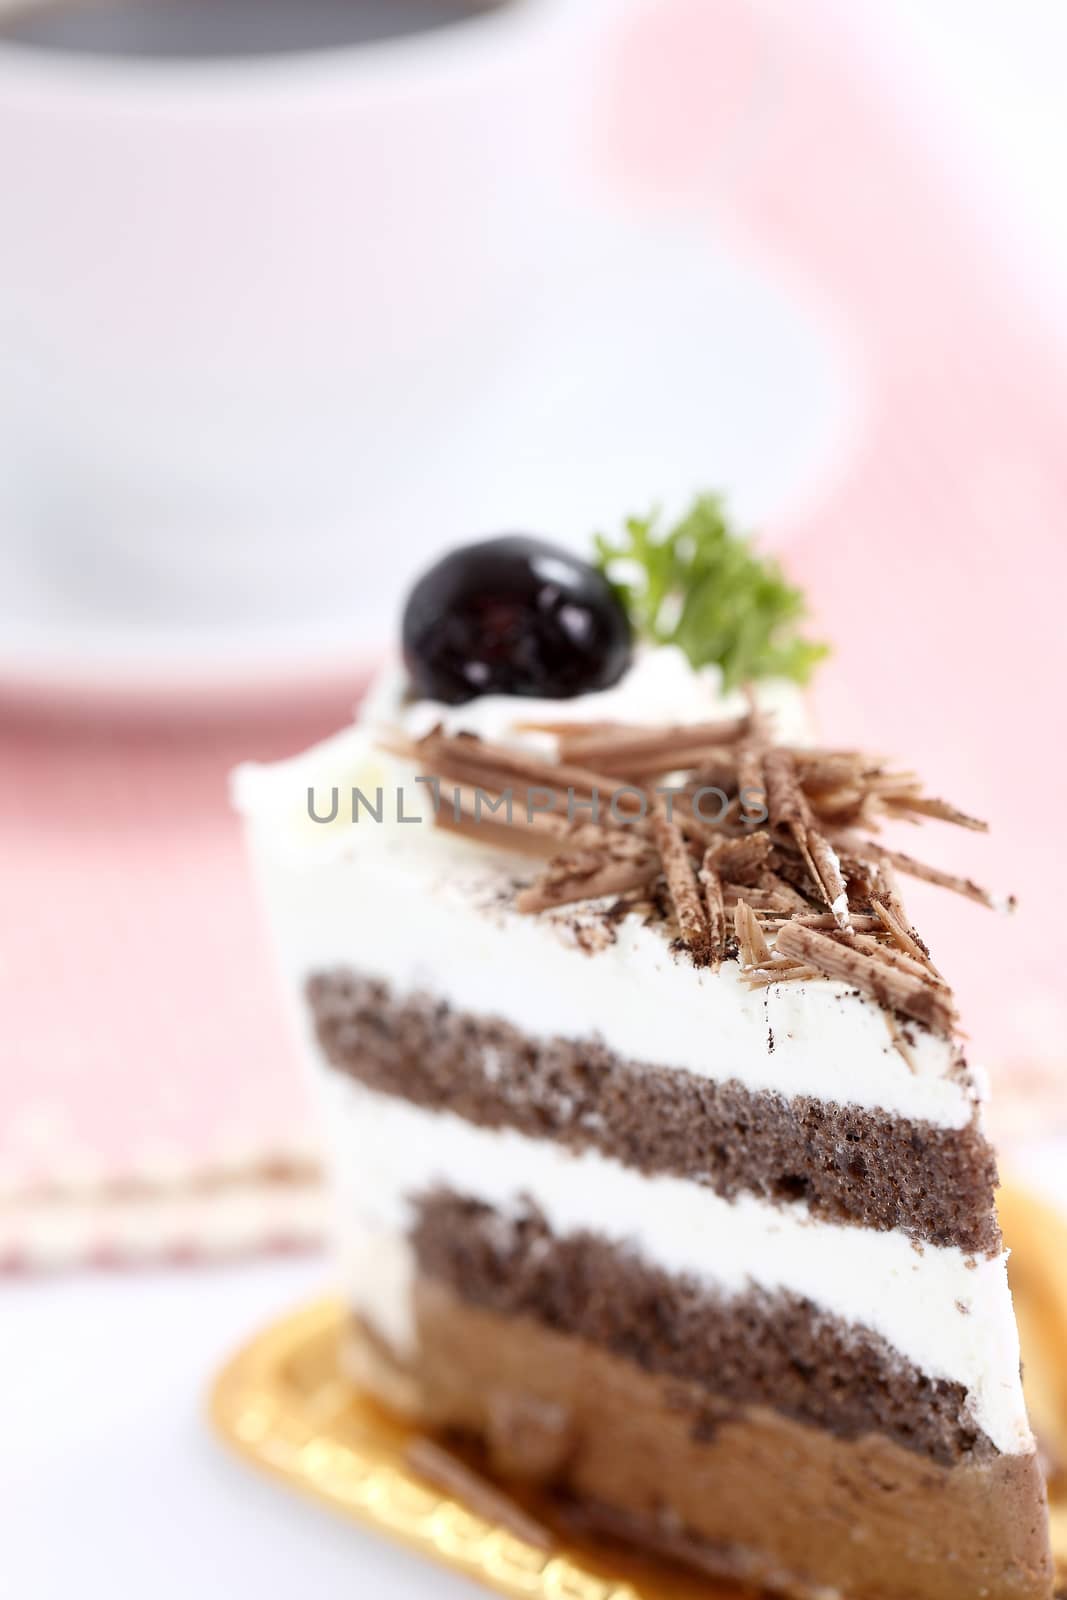 Chocolate Cake with coffee